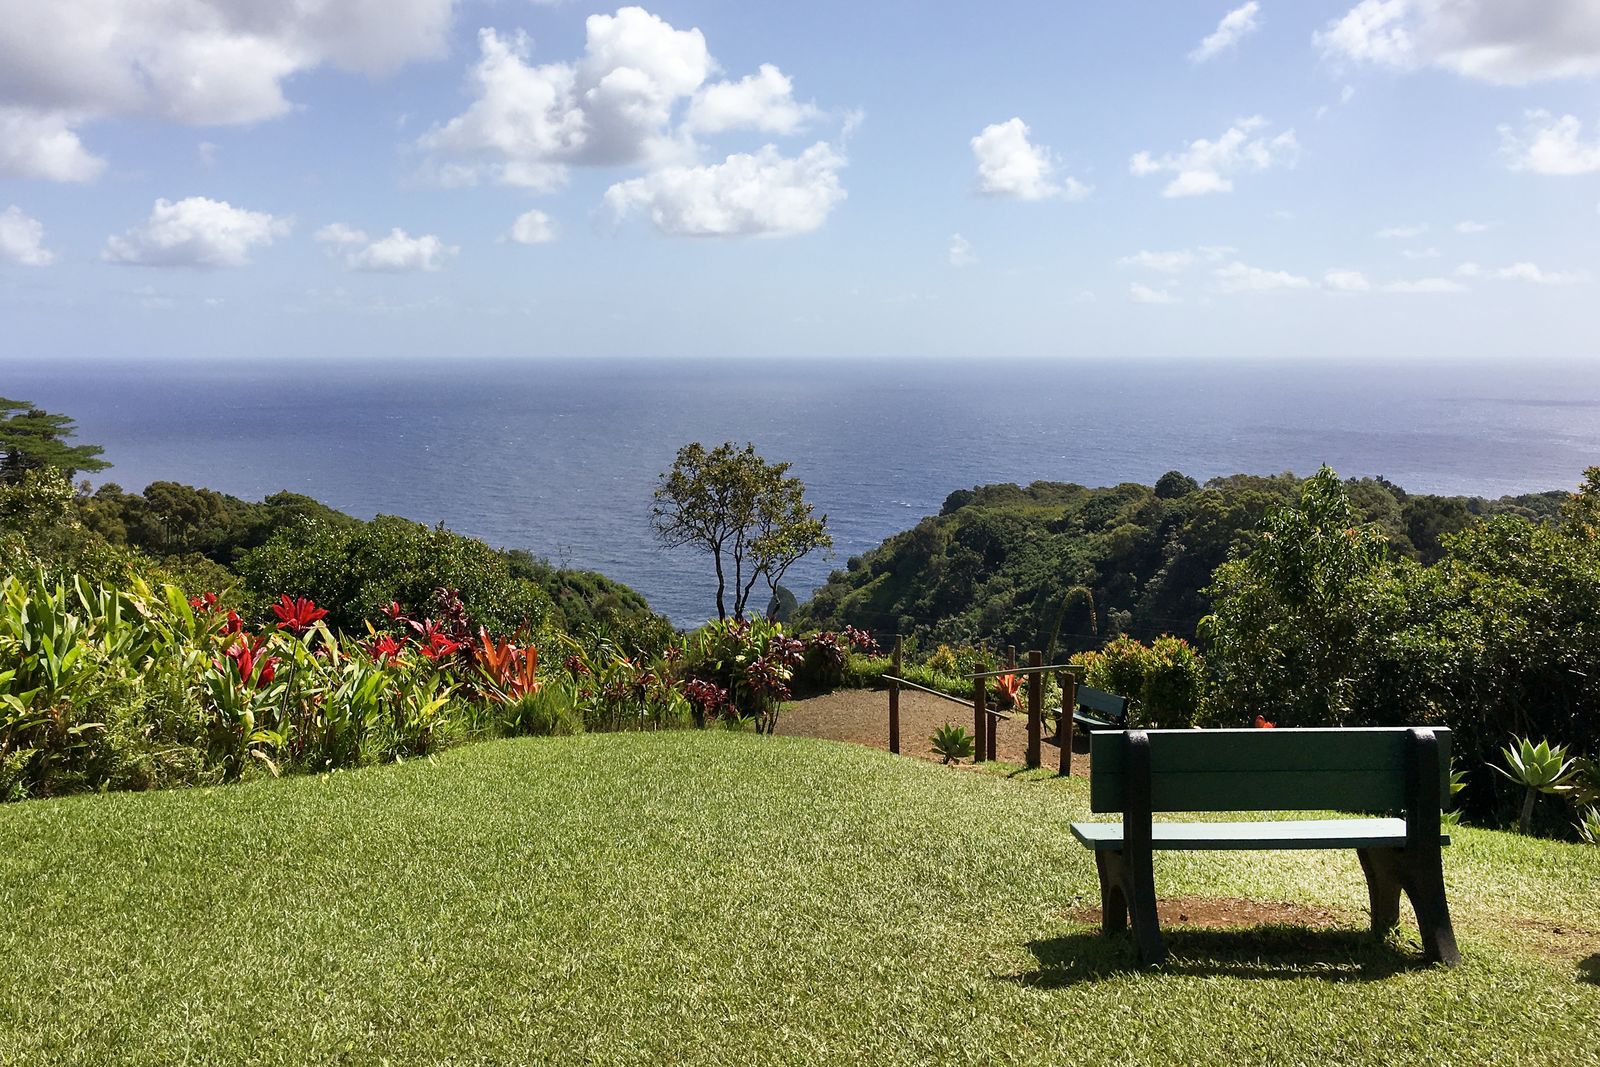 Die Aussicht auf den Atlantik vom Garden of Eden auf Maui